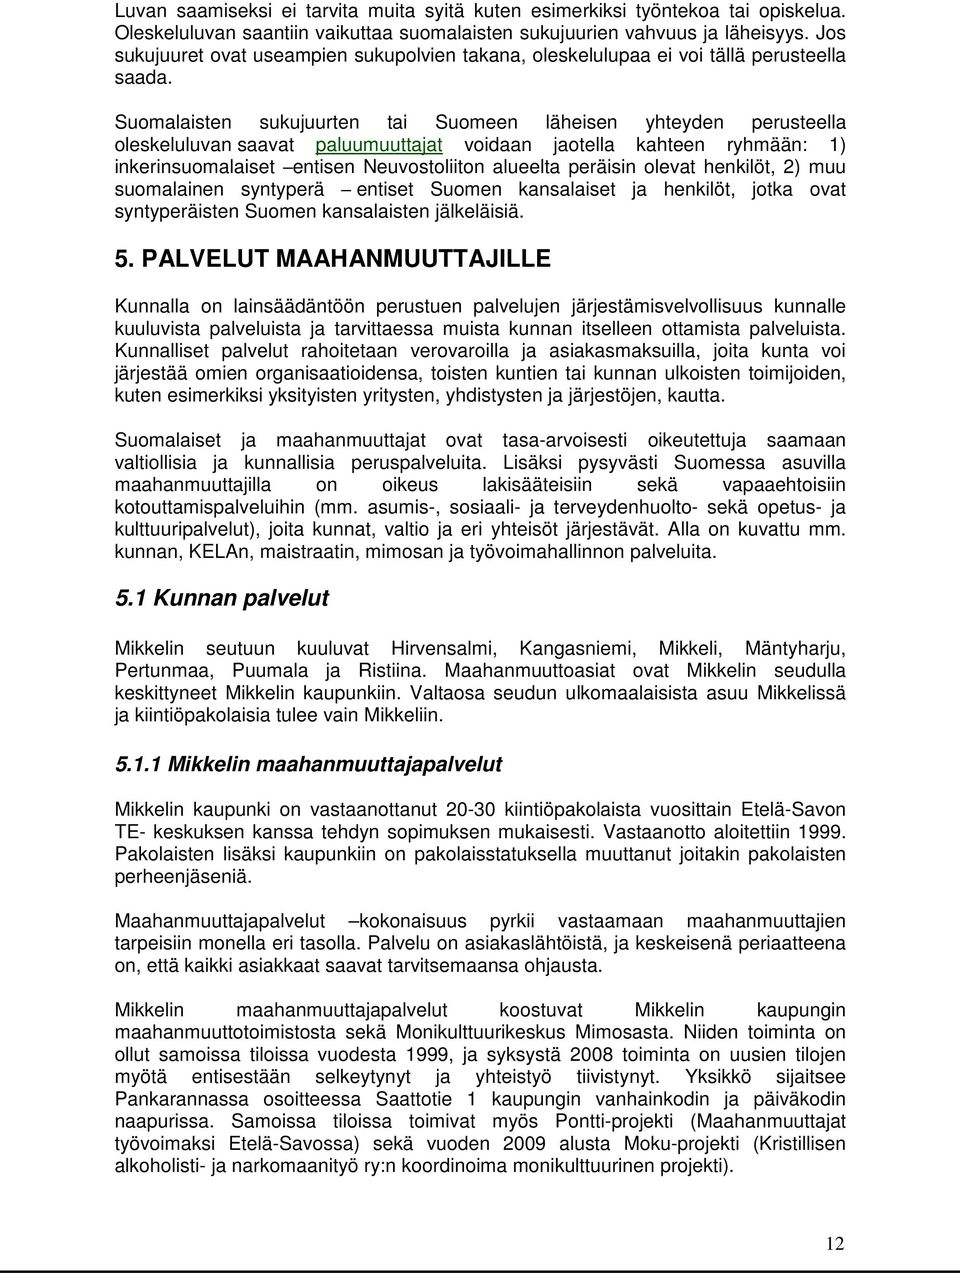 Suomalaisten sukujuurten tai Suomeen läheisen yhteyden perusteella oleskeluluvan saavat paluumuuttajat voidaan jaotella kahteen ryhmään: 1) inkerinsuomalaiset entisen Neuvostoliiton alueelta peräisin